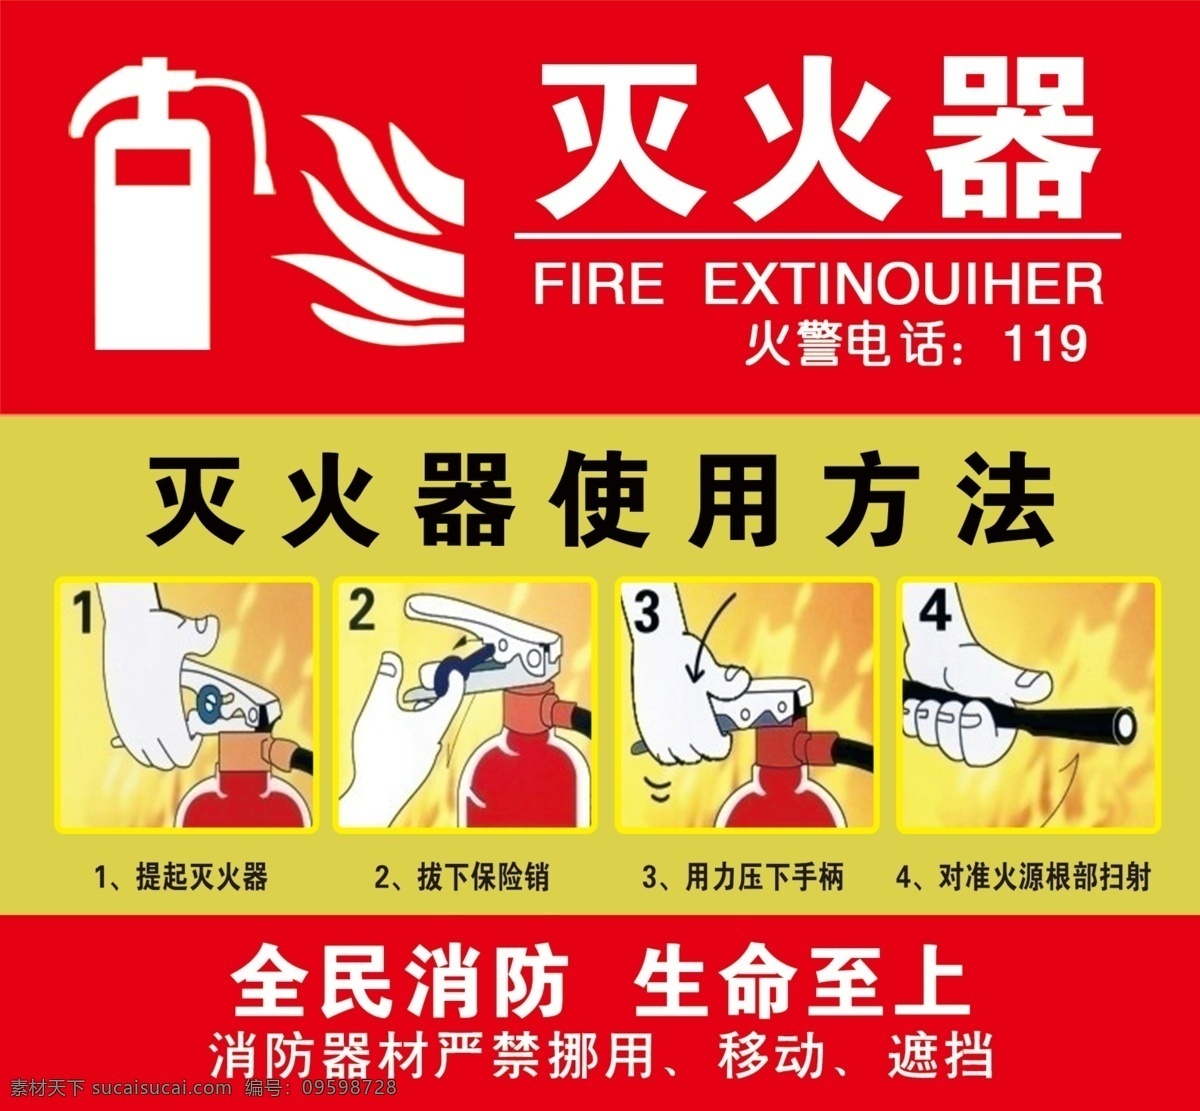 灭火器使用 灭火器 消防 消防标识贴 消防展板 灭火 消防工具